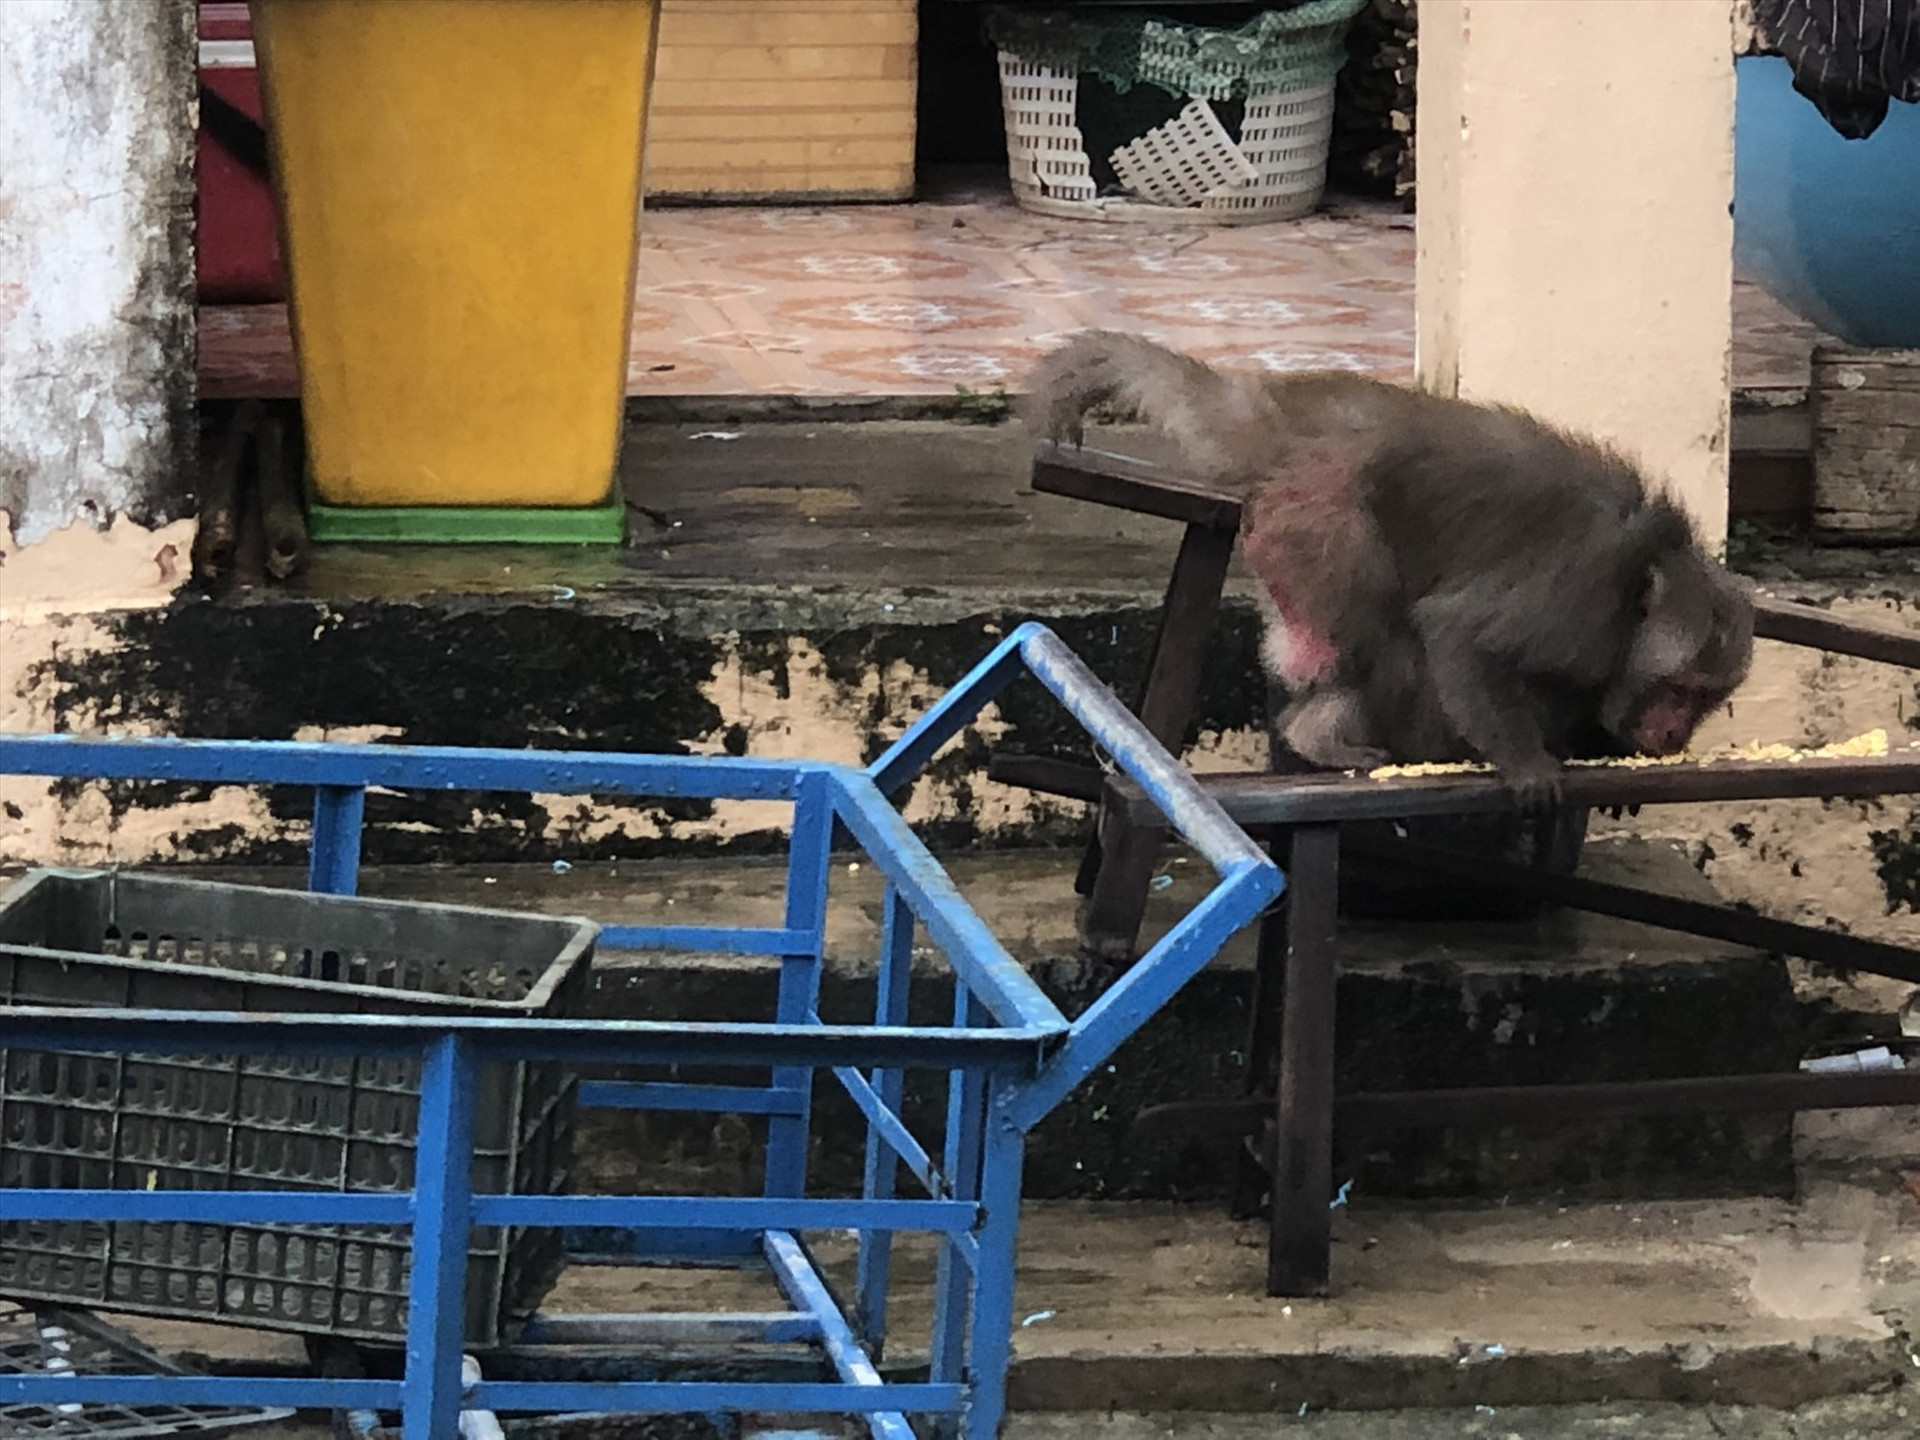 Khỉ xuống núi vào nhà dân ở Cù Lao Chàm để phá phách, tìm thức ăn. Ảnh: Người dân cung cấp.